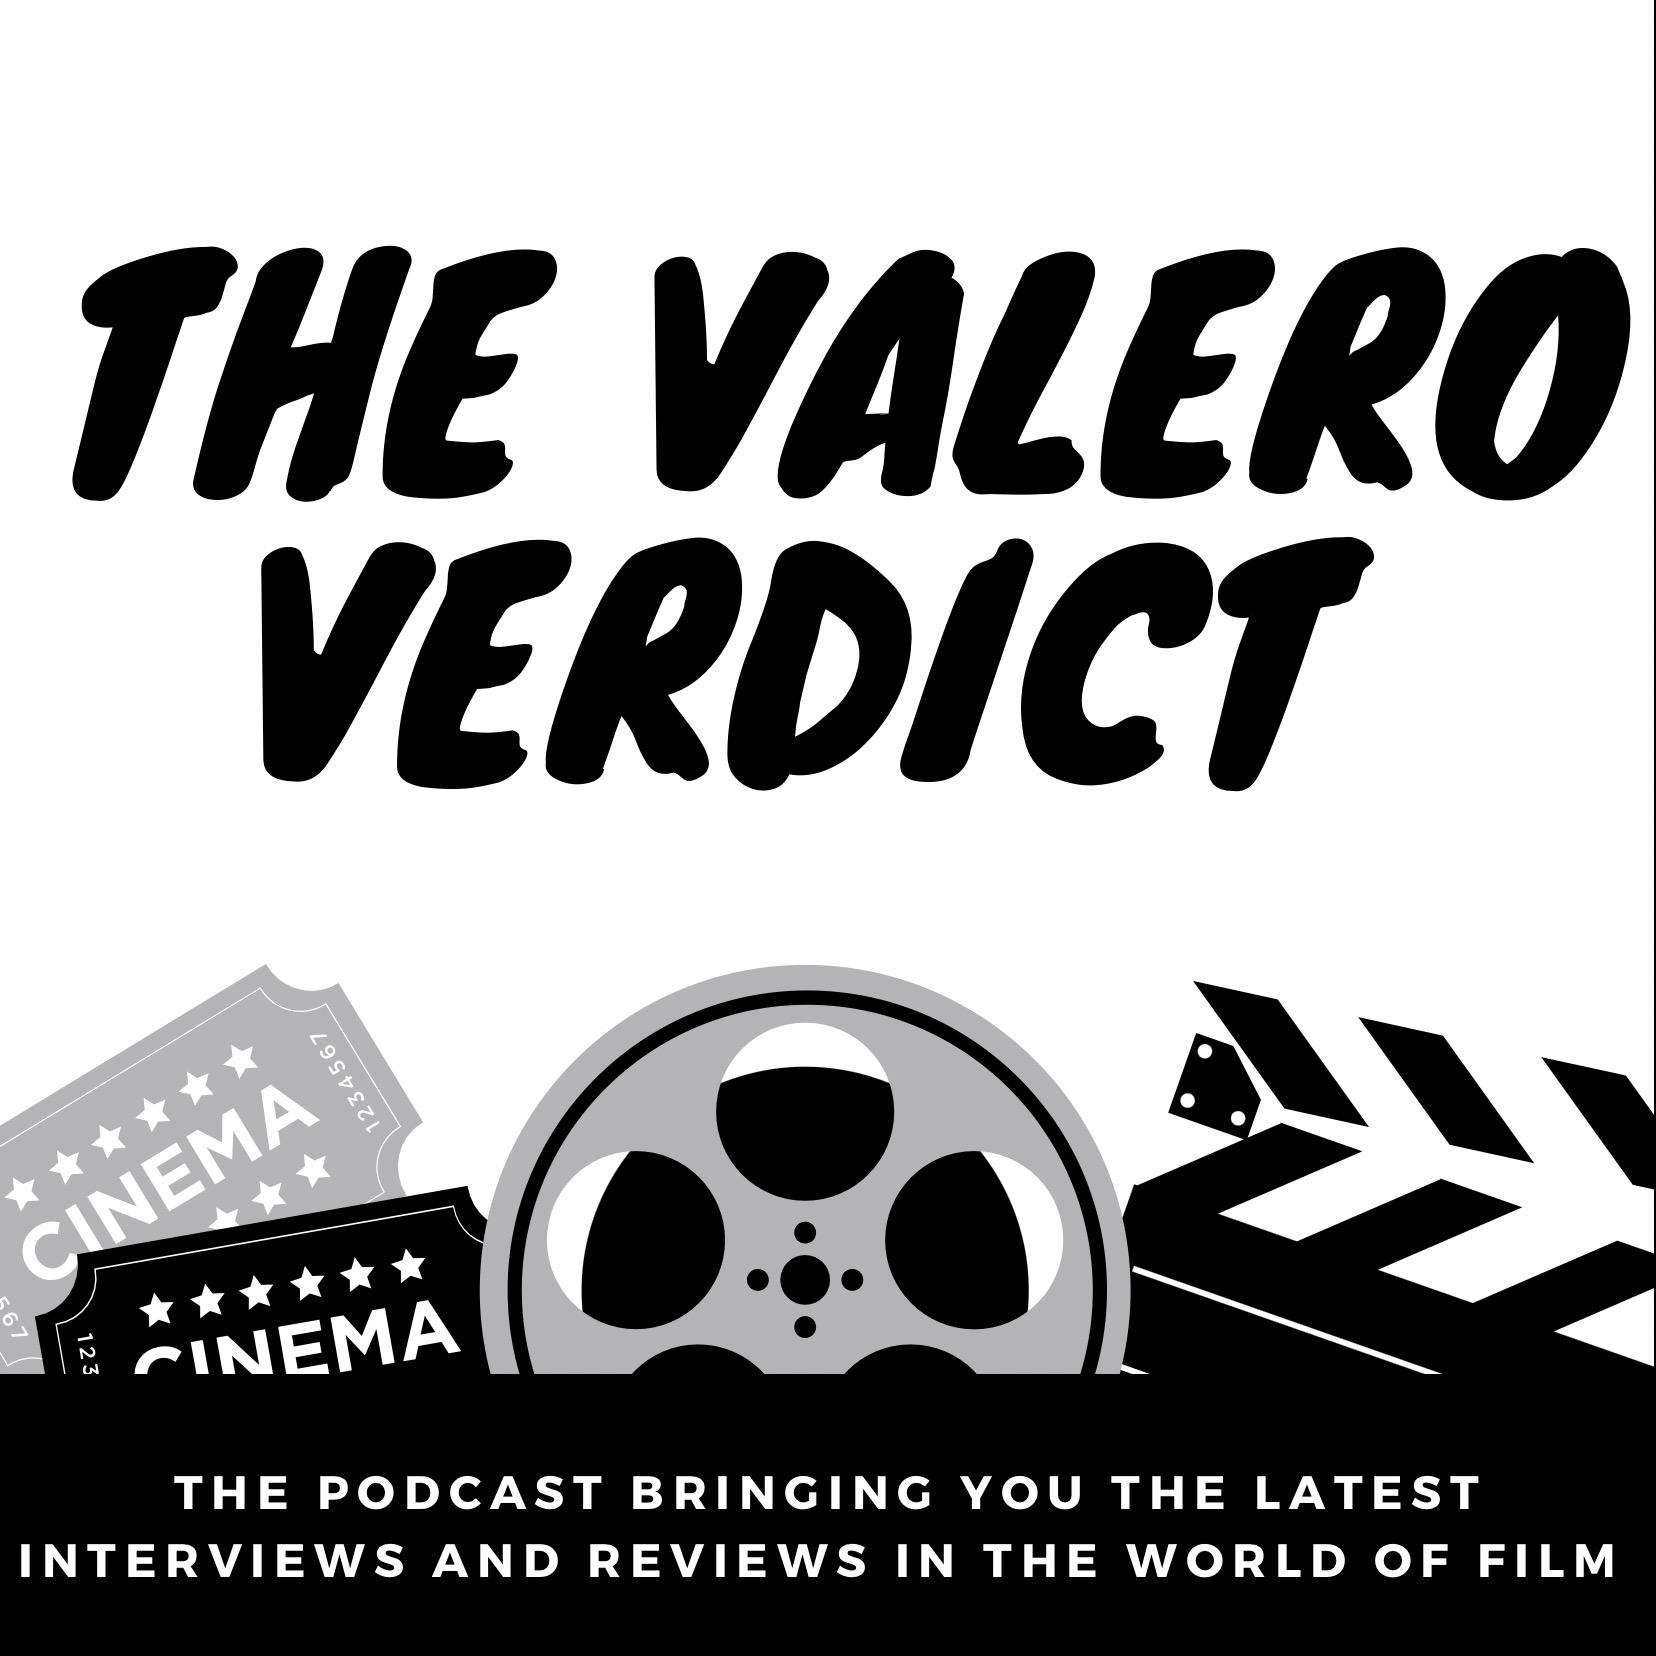 The Valero Verdict